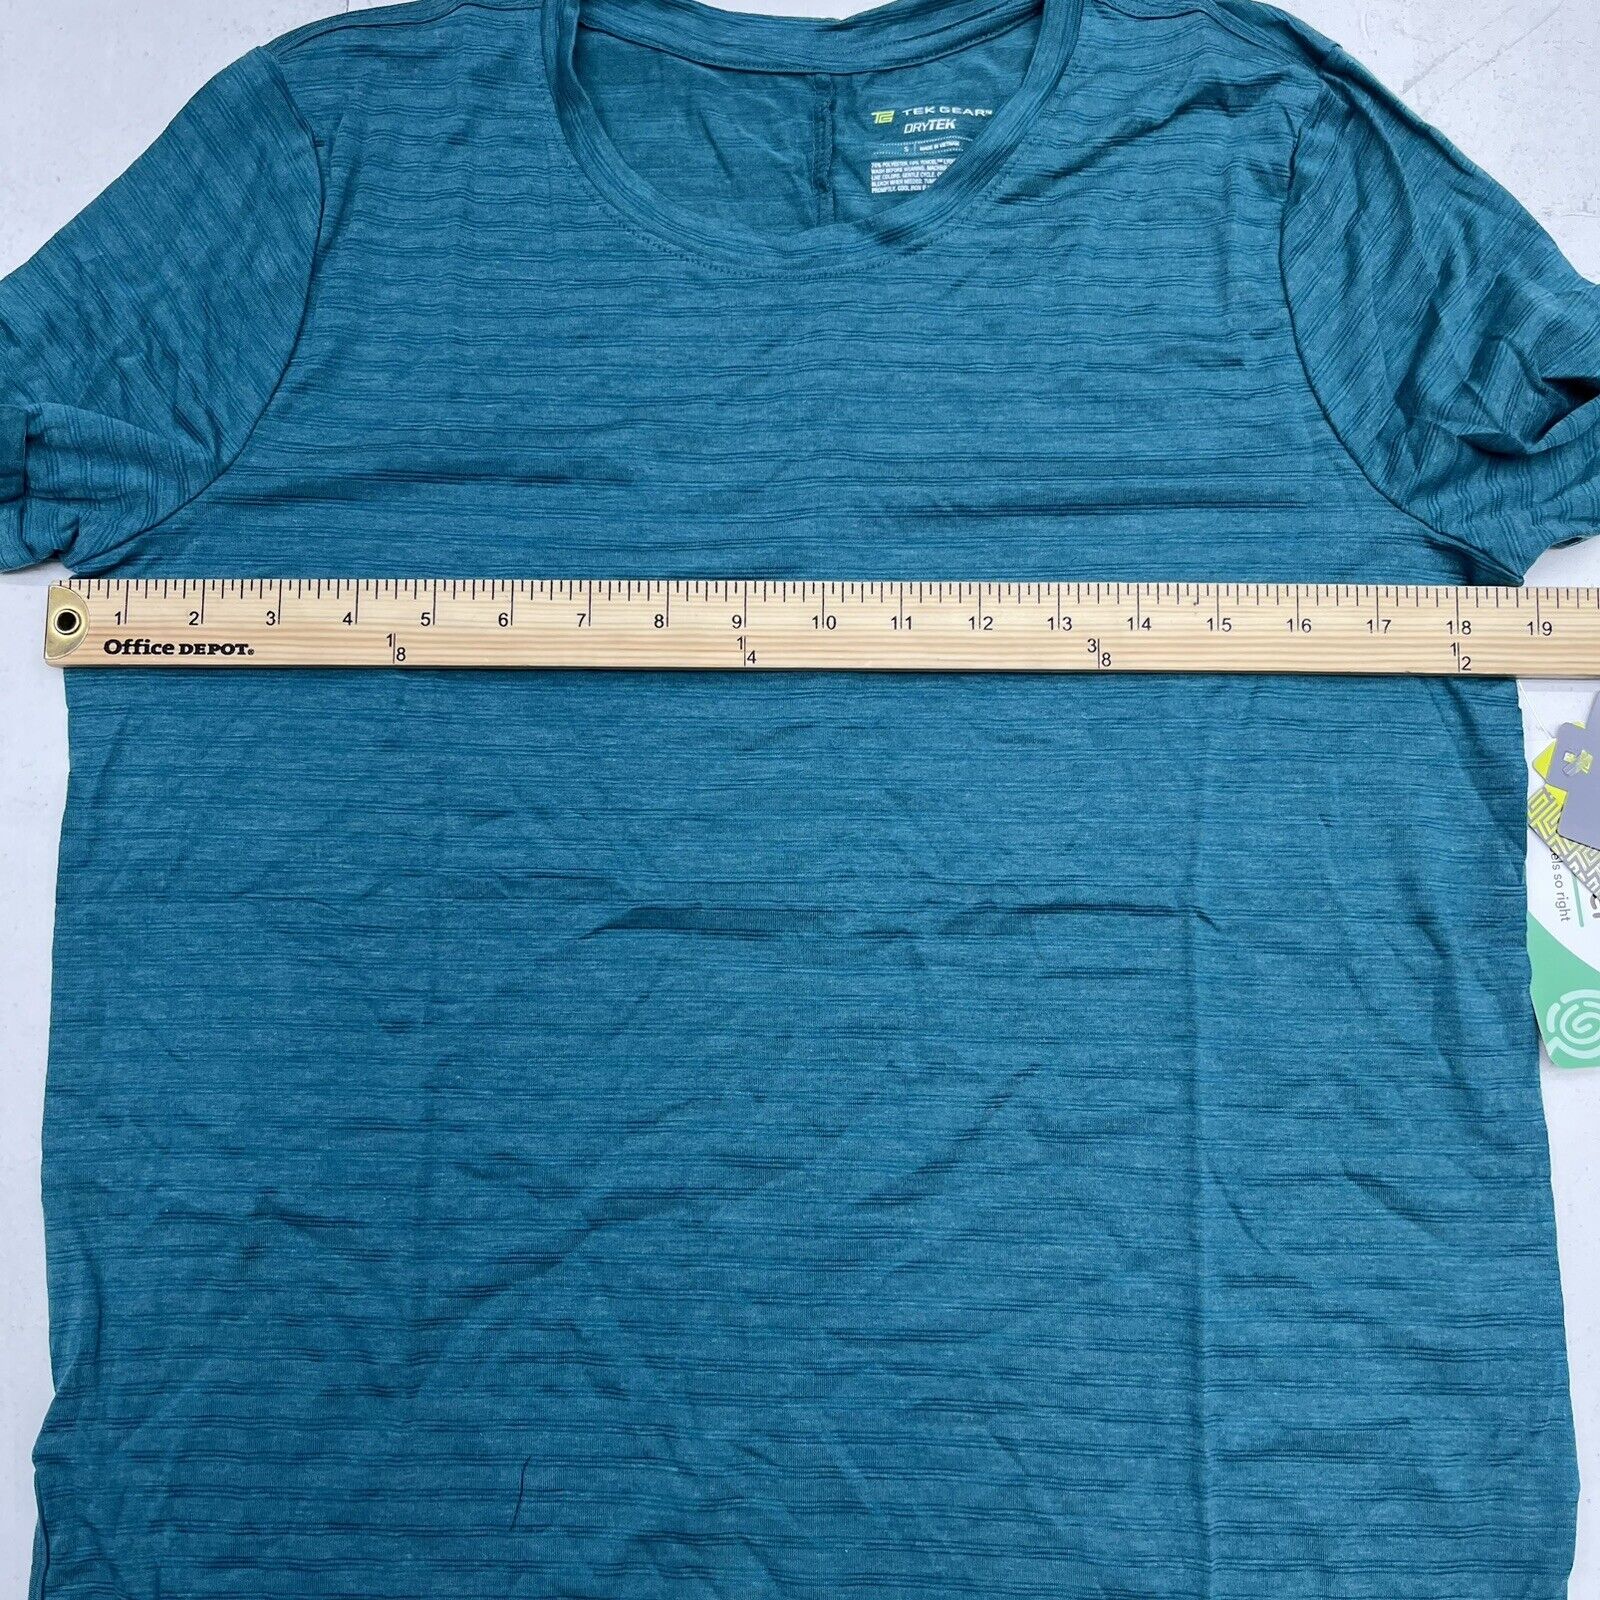 TEK Gear - Drytek - Athletic - Short Sleeve - Shirt - Size XL - BLUE